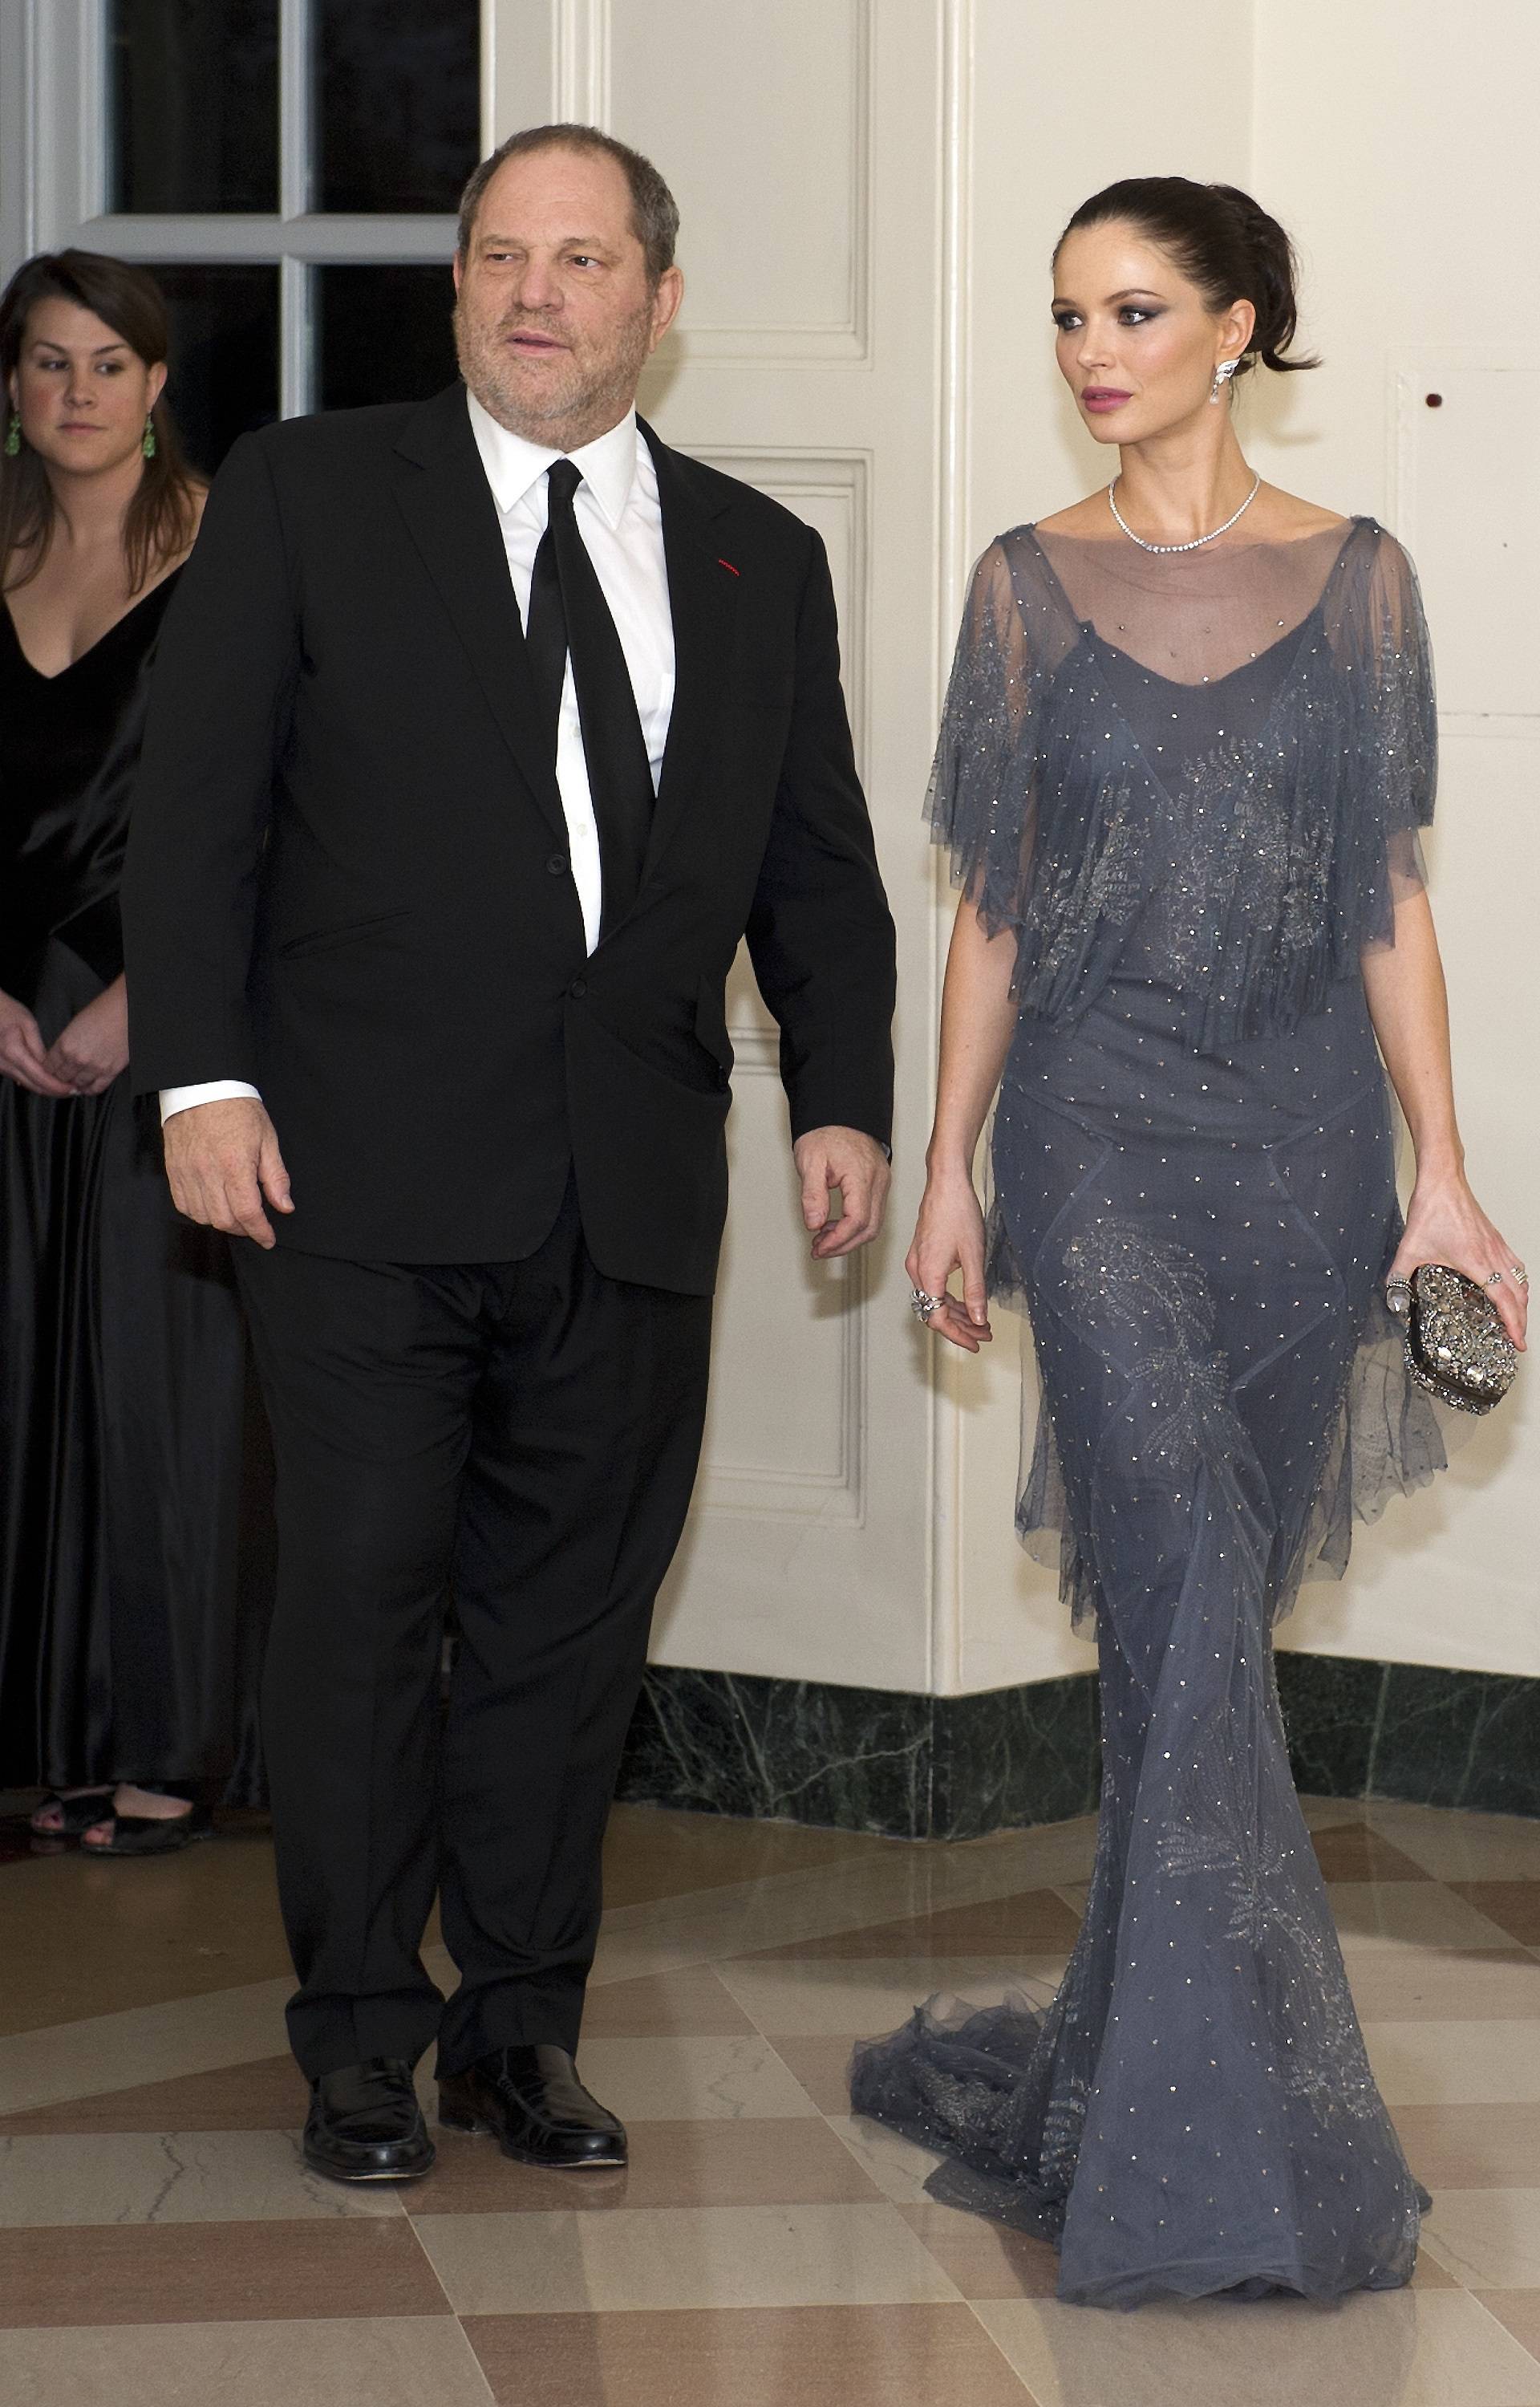 2012 Kennedy Center Honors Gala Dinner